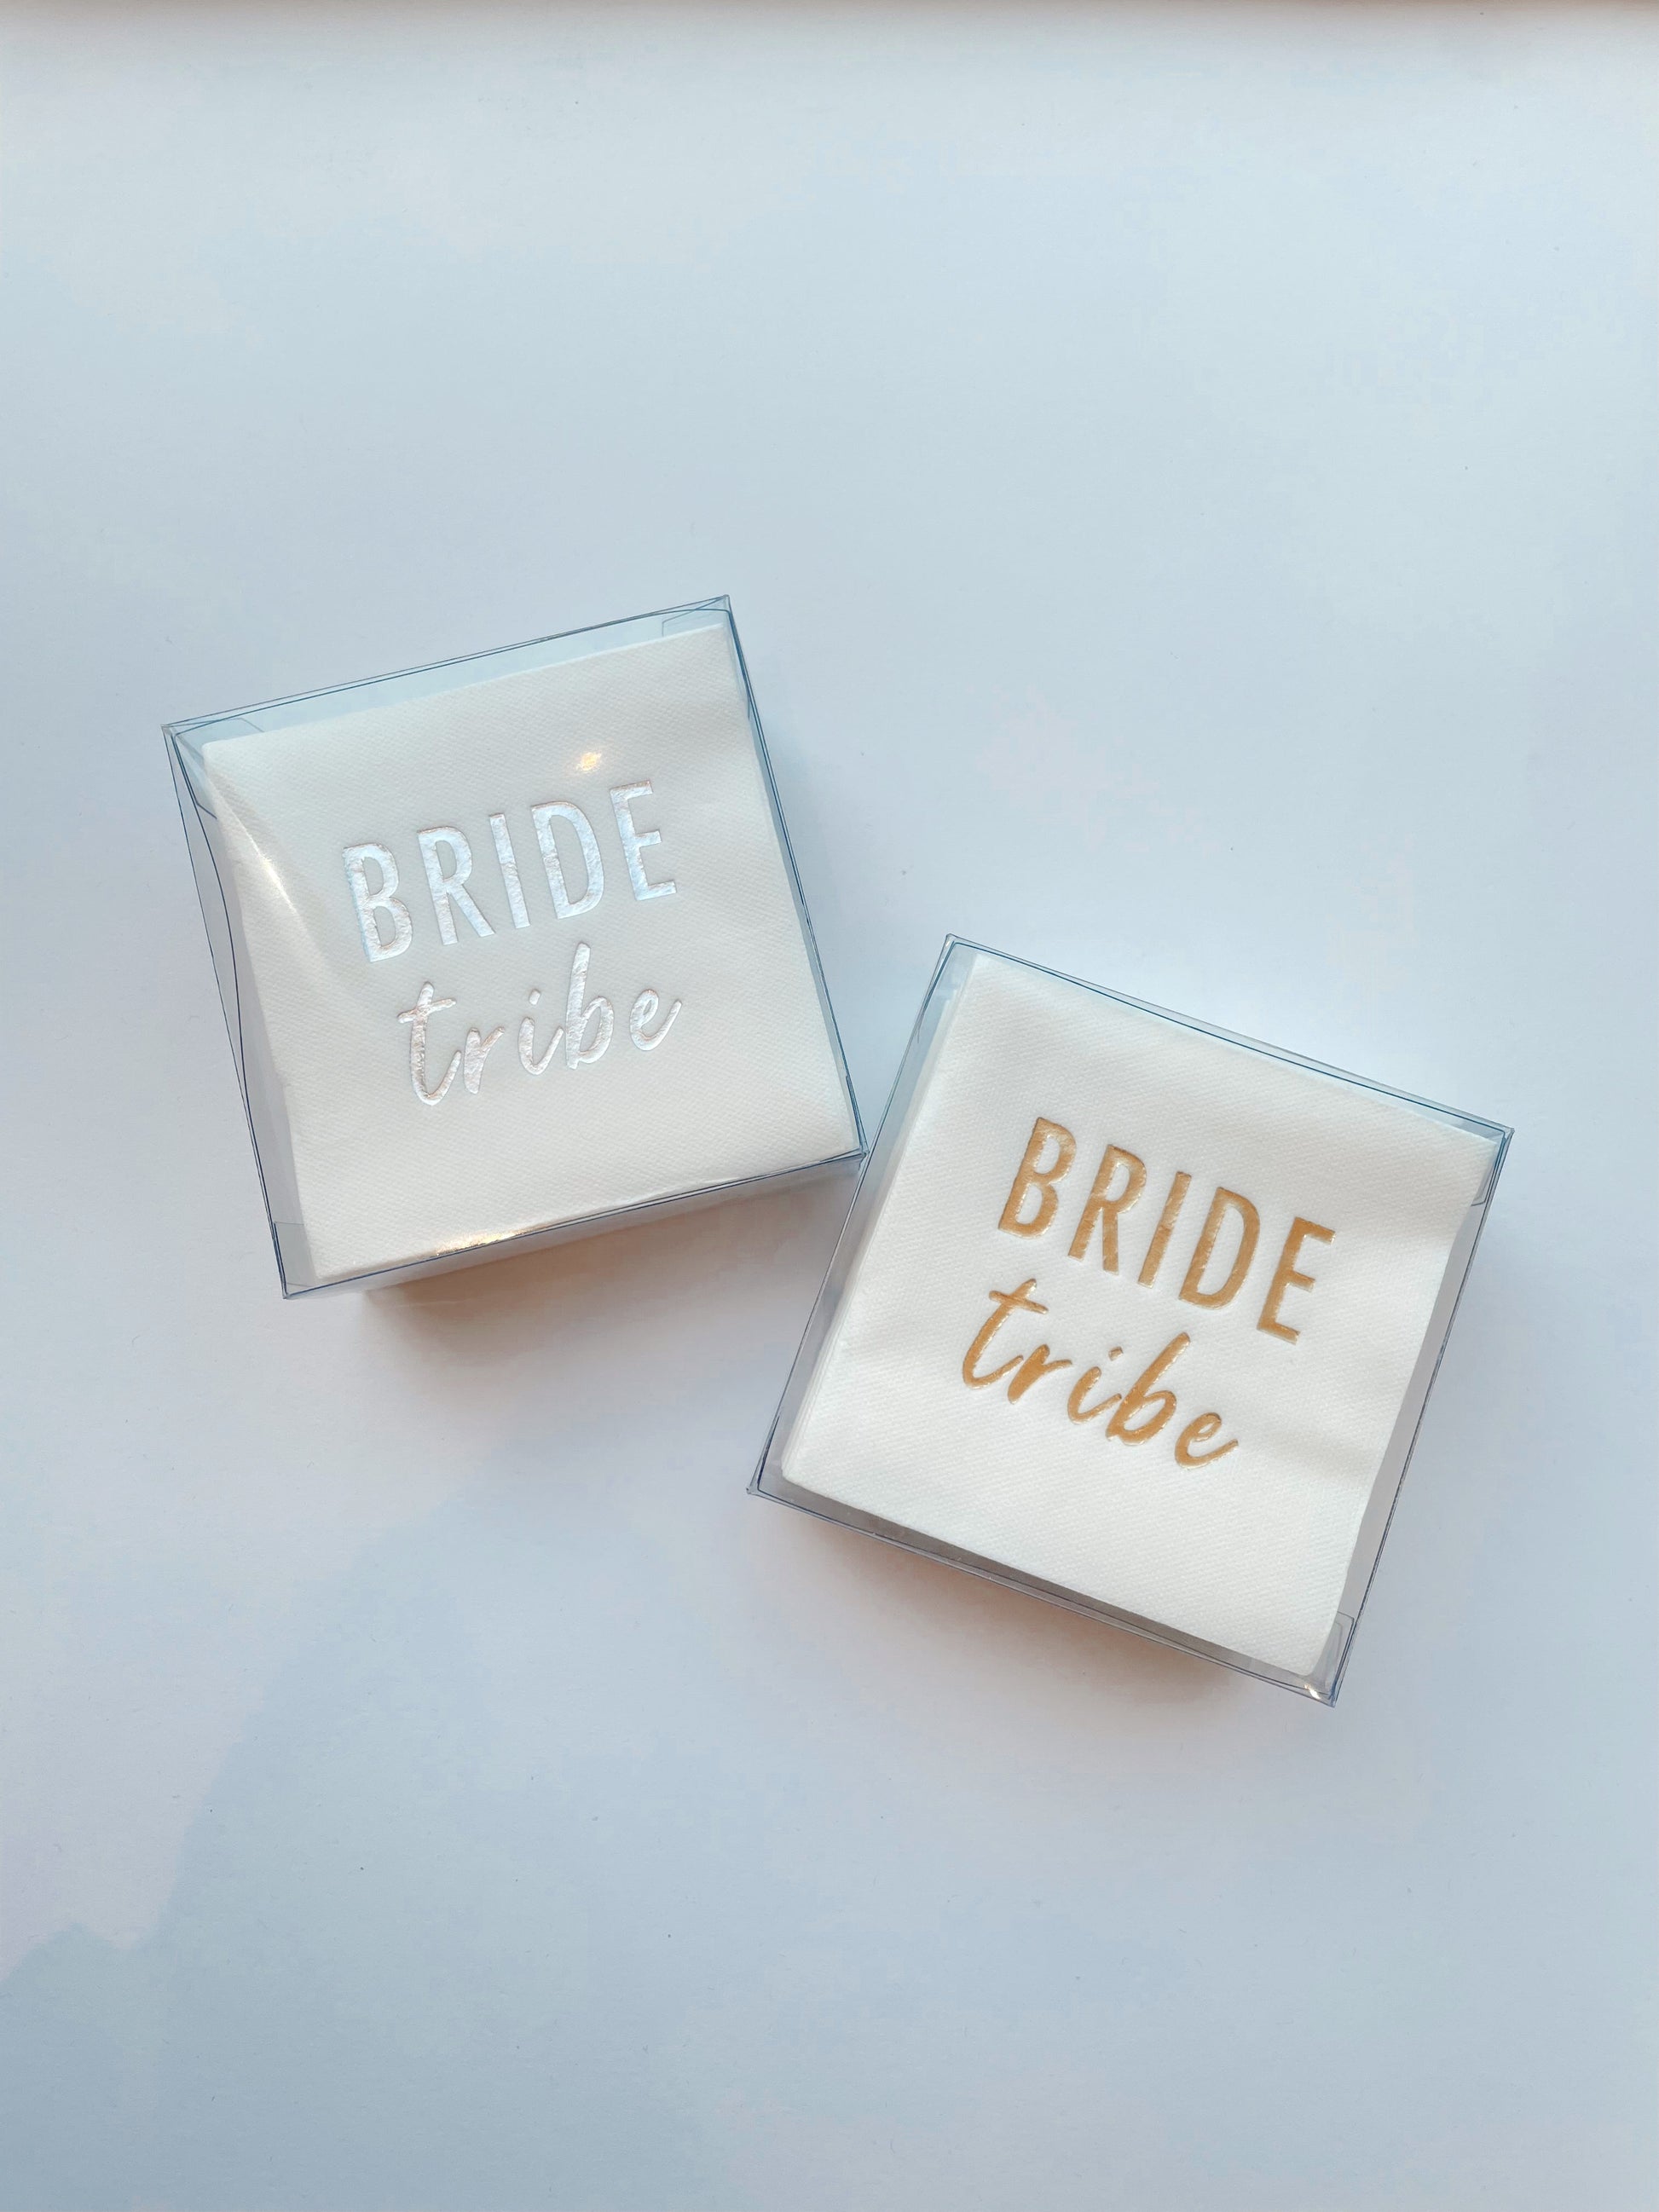 Servilletas cocteleras blancas con letras en foil dorado "Bride tribe"